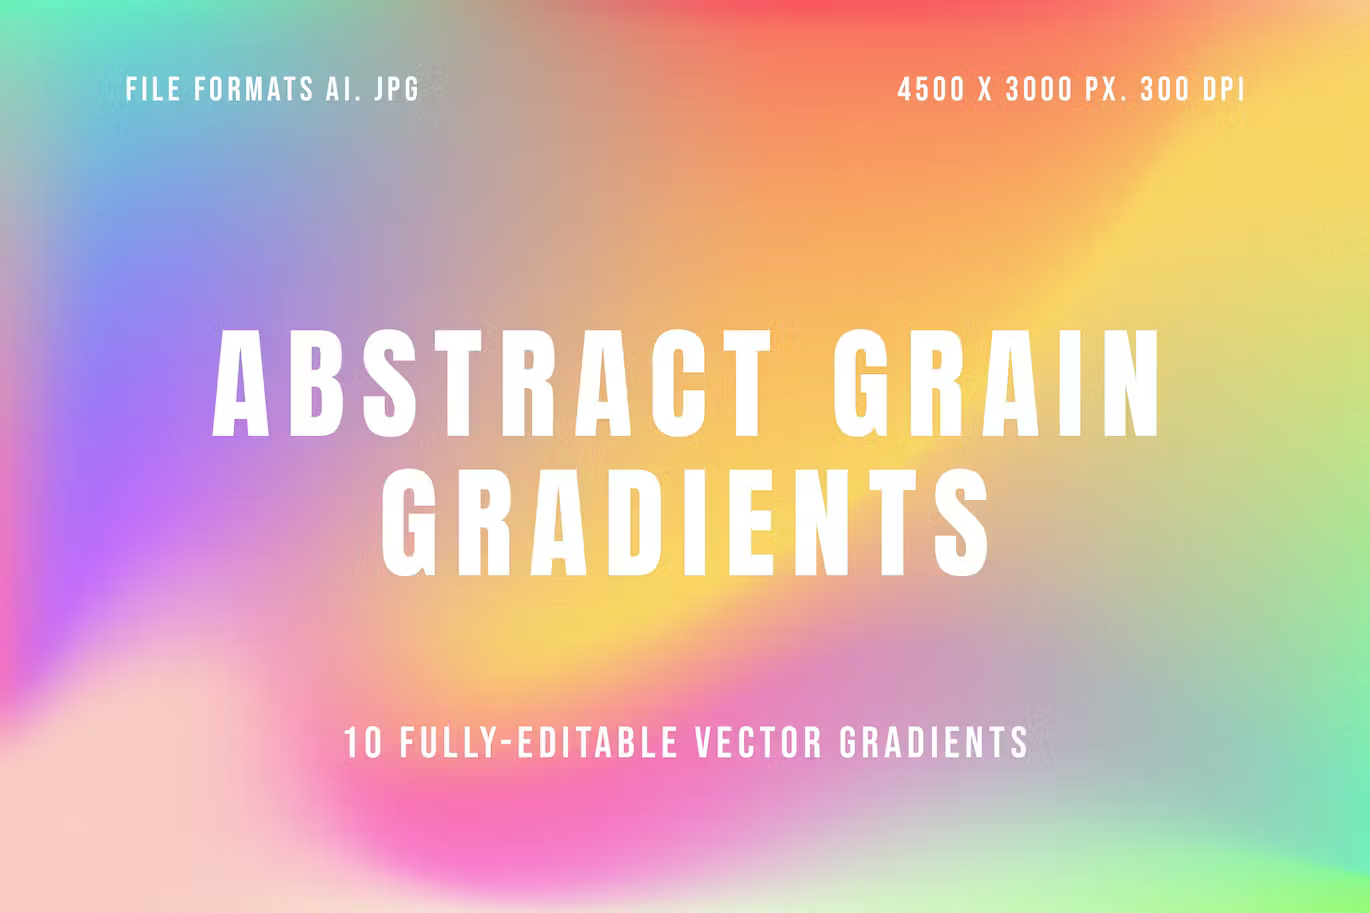 Abstract Grain Gradients by creativetacos